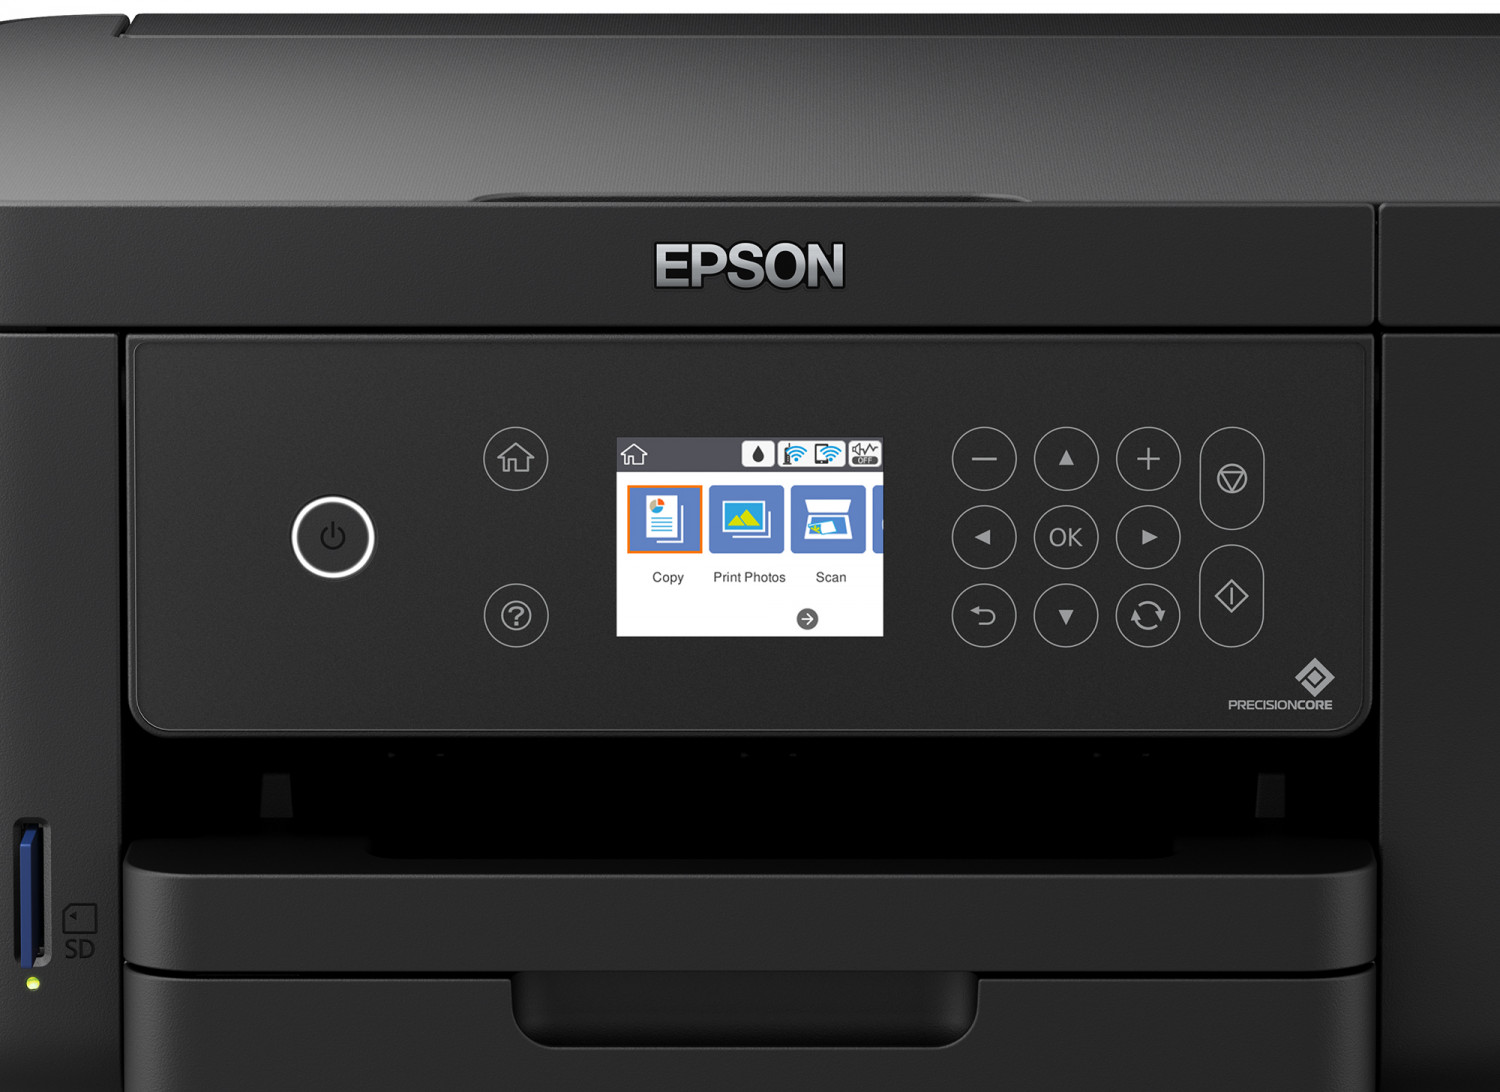 Impresora Epson XP-5100: Multifuncion impresora-copiadora-escaner, dúplex en impresión, Wifi, USB, Impresión móvil, Pantalla a color, bandeja posterior hasta 100 paginas, 33 pg/min Monocromo, 15 pg/min Color, nueva, Ecotank Dye reformada a L6160